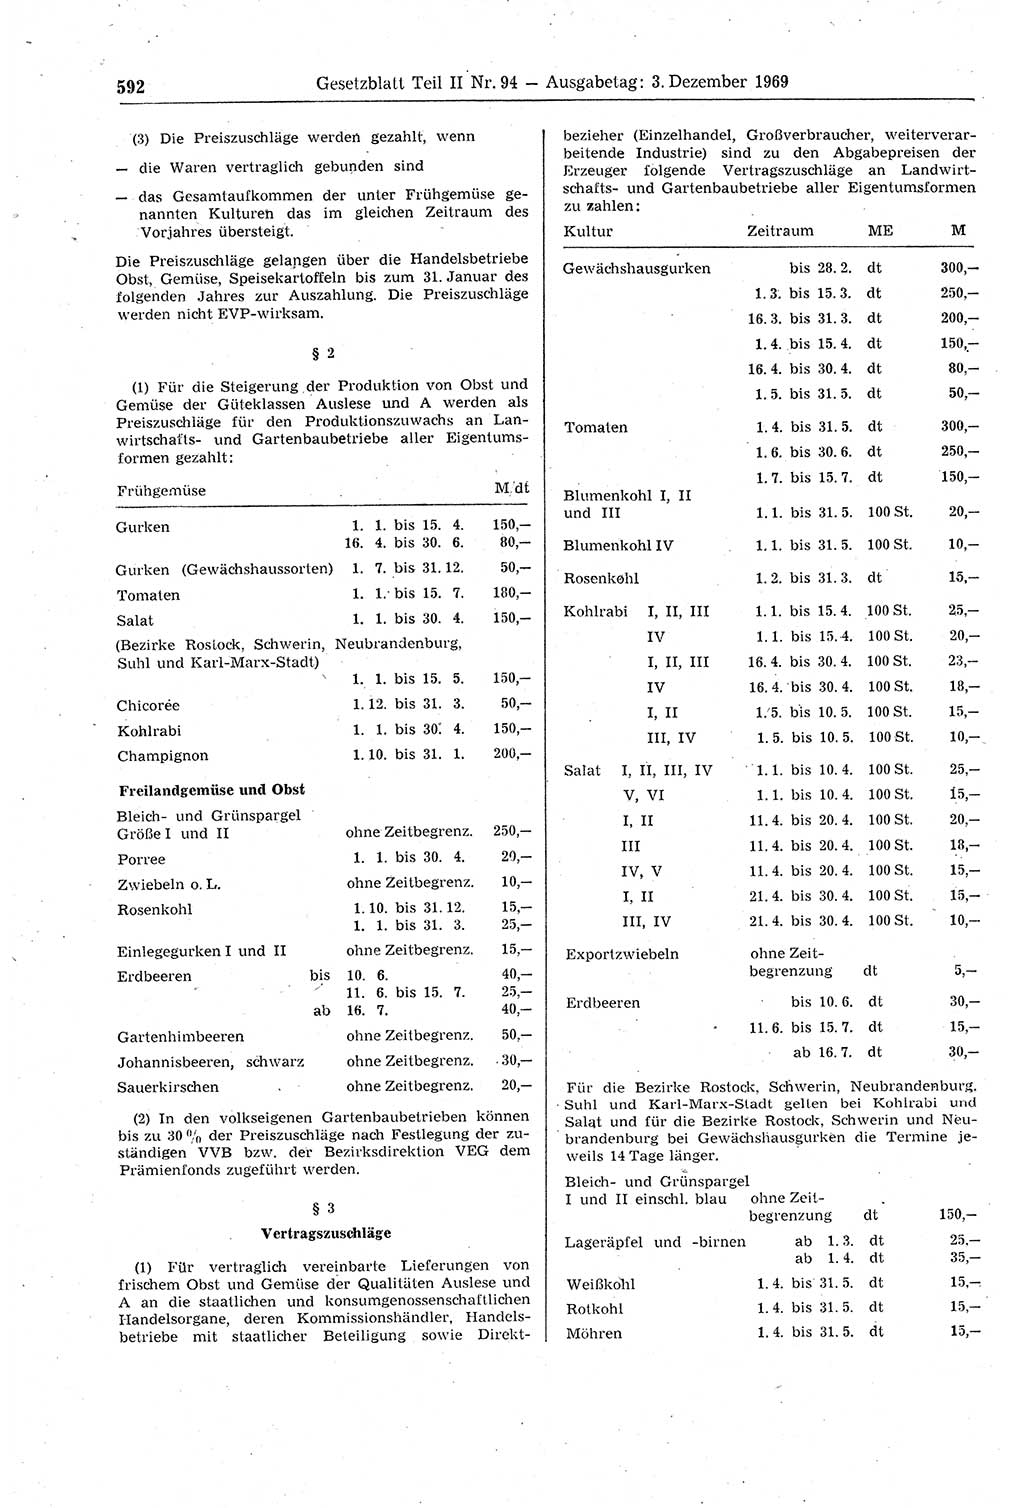 Gesetzblatt (GBl.) der Deutschen Demokratischen Republik (DDR) Teil ⅠⅠ 1969, Seite 592 (GBl. DDR ⅠⅠ 1969, S. 592)